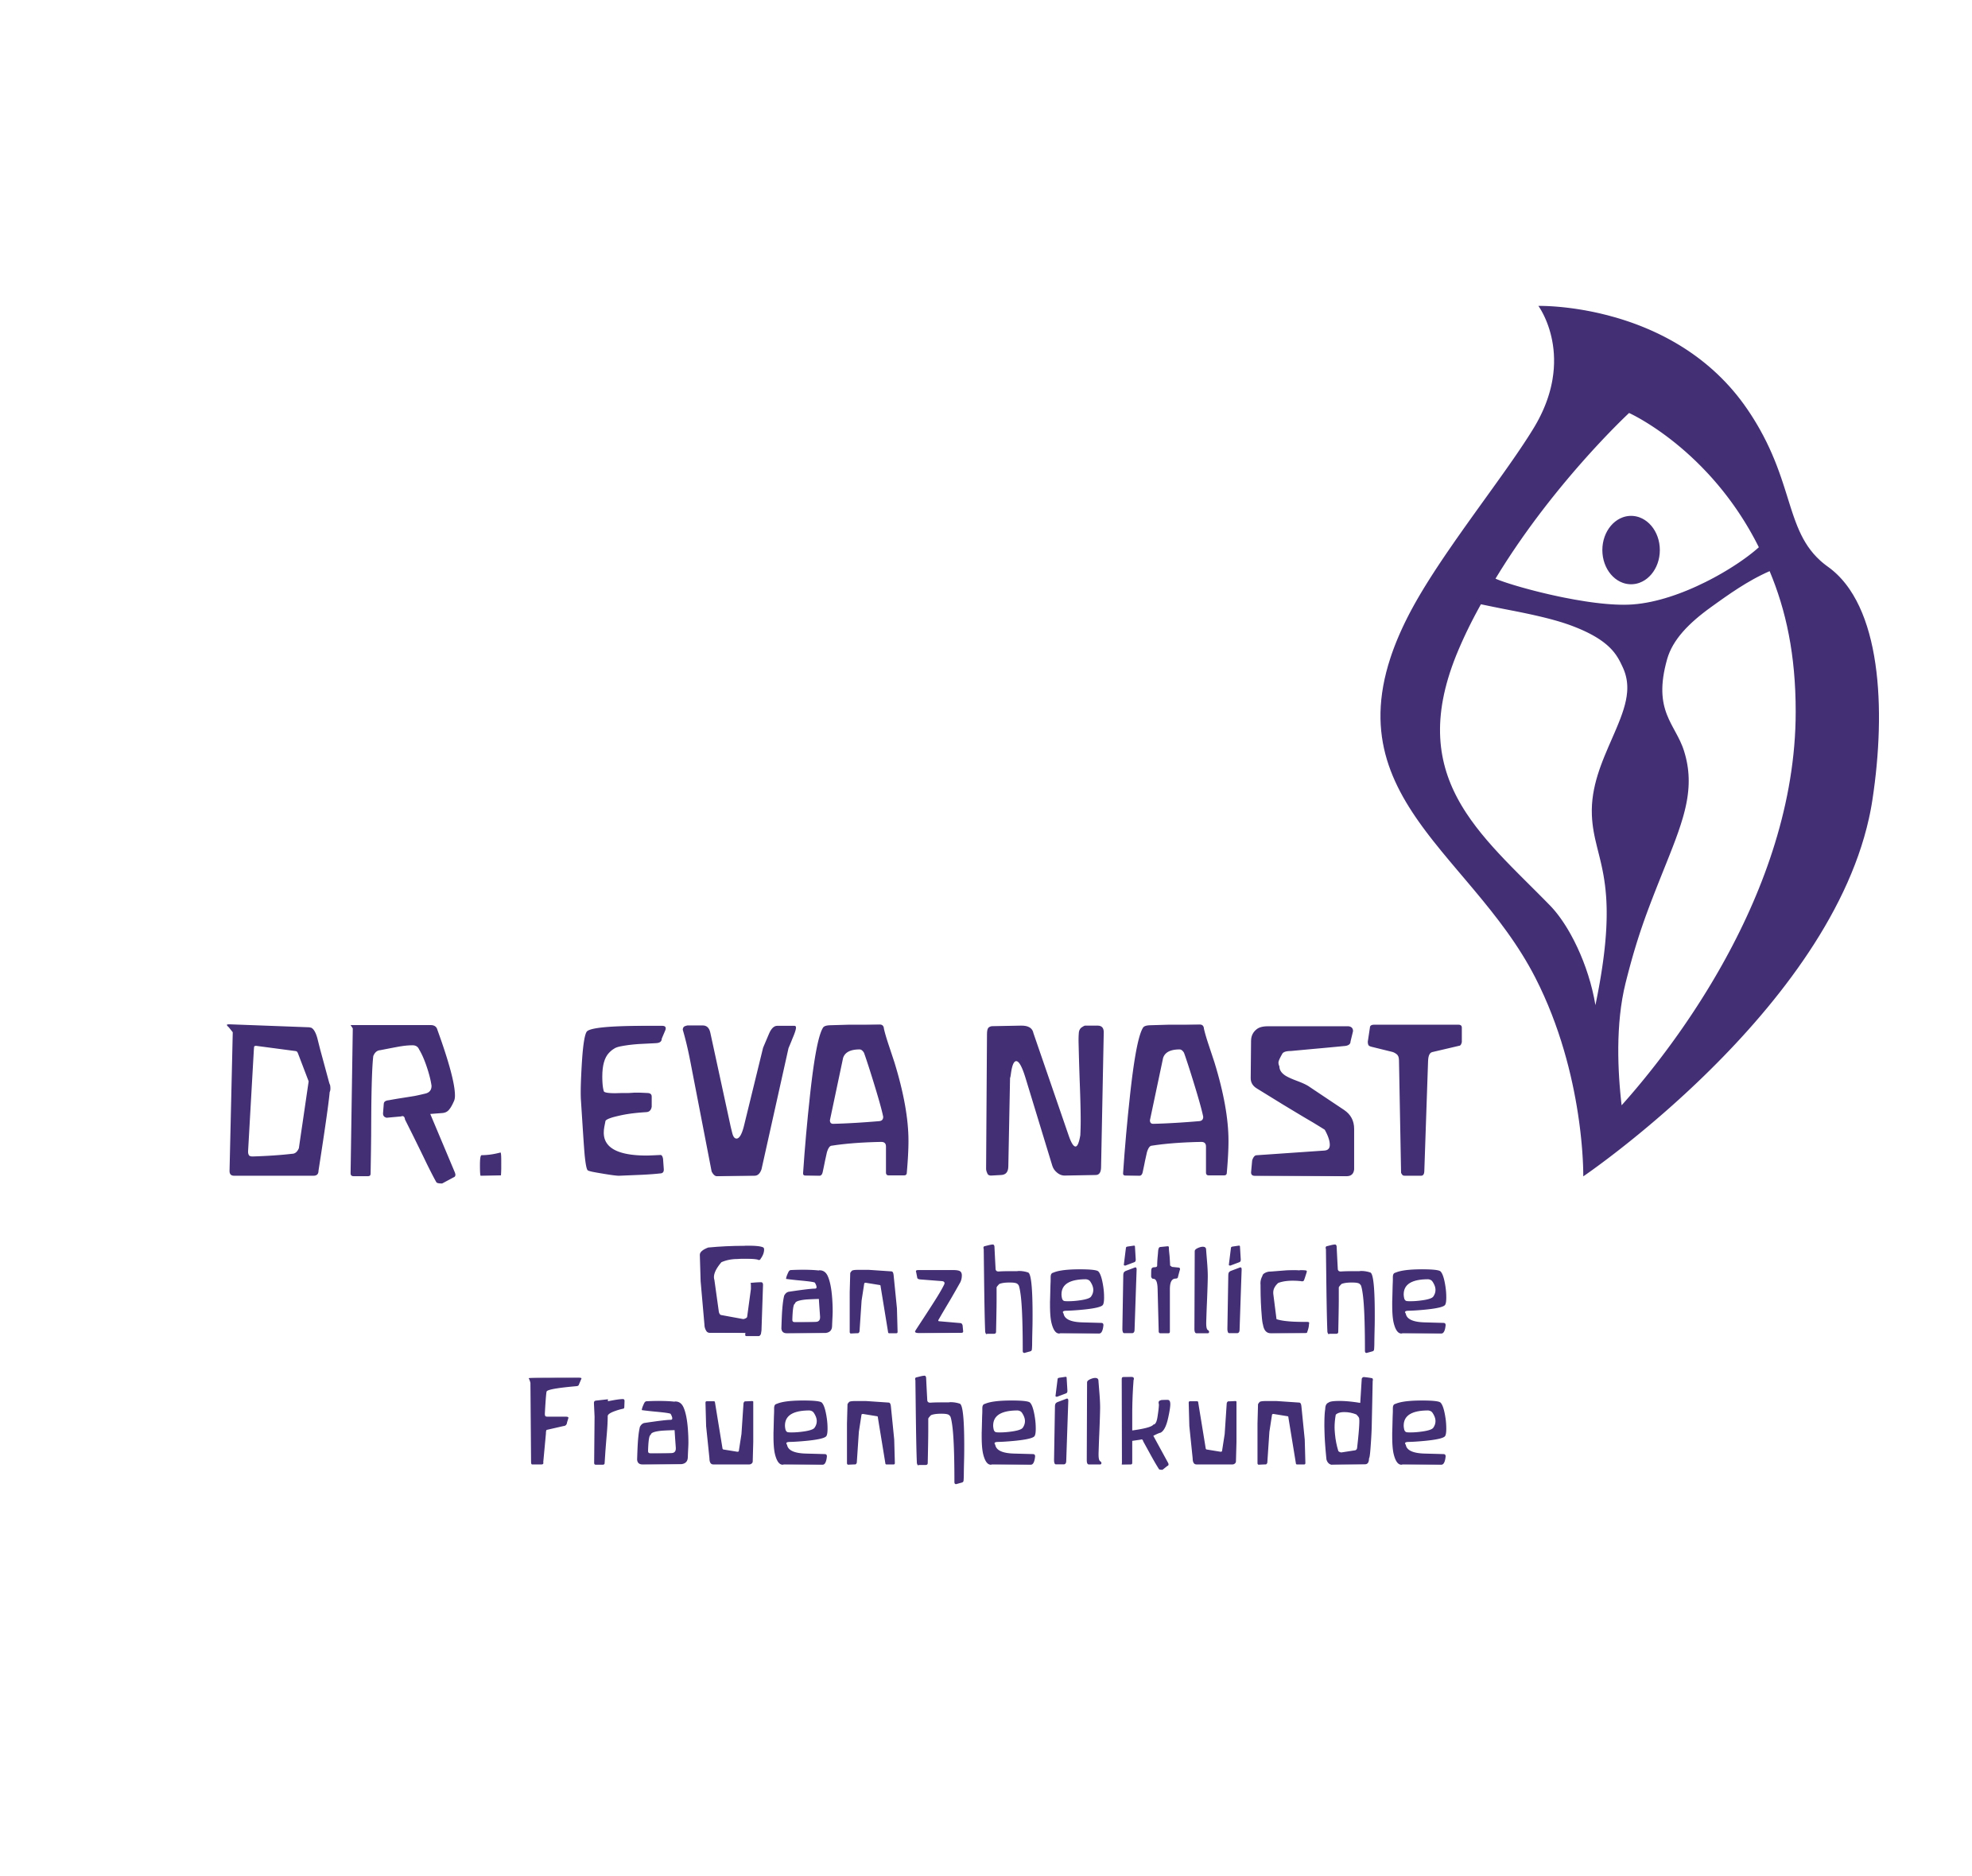 Dr. Eva Nast - Ganzheitliche Frauenheilkunde